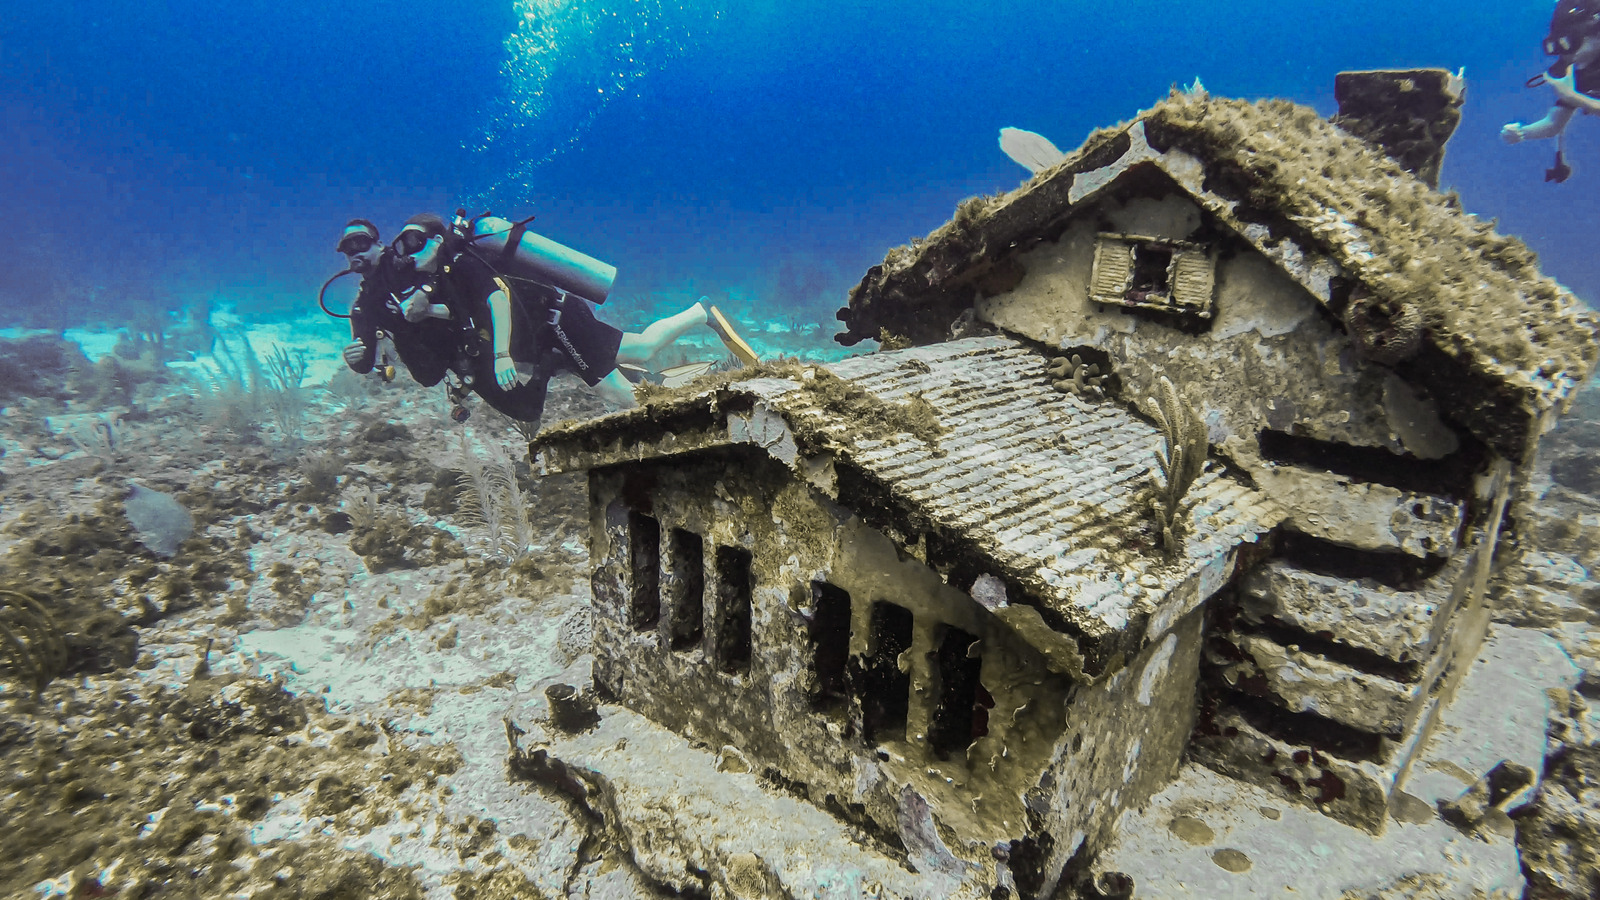 MUSA - Underwater Museum